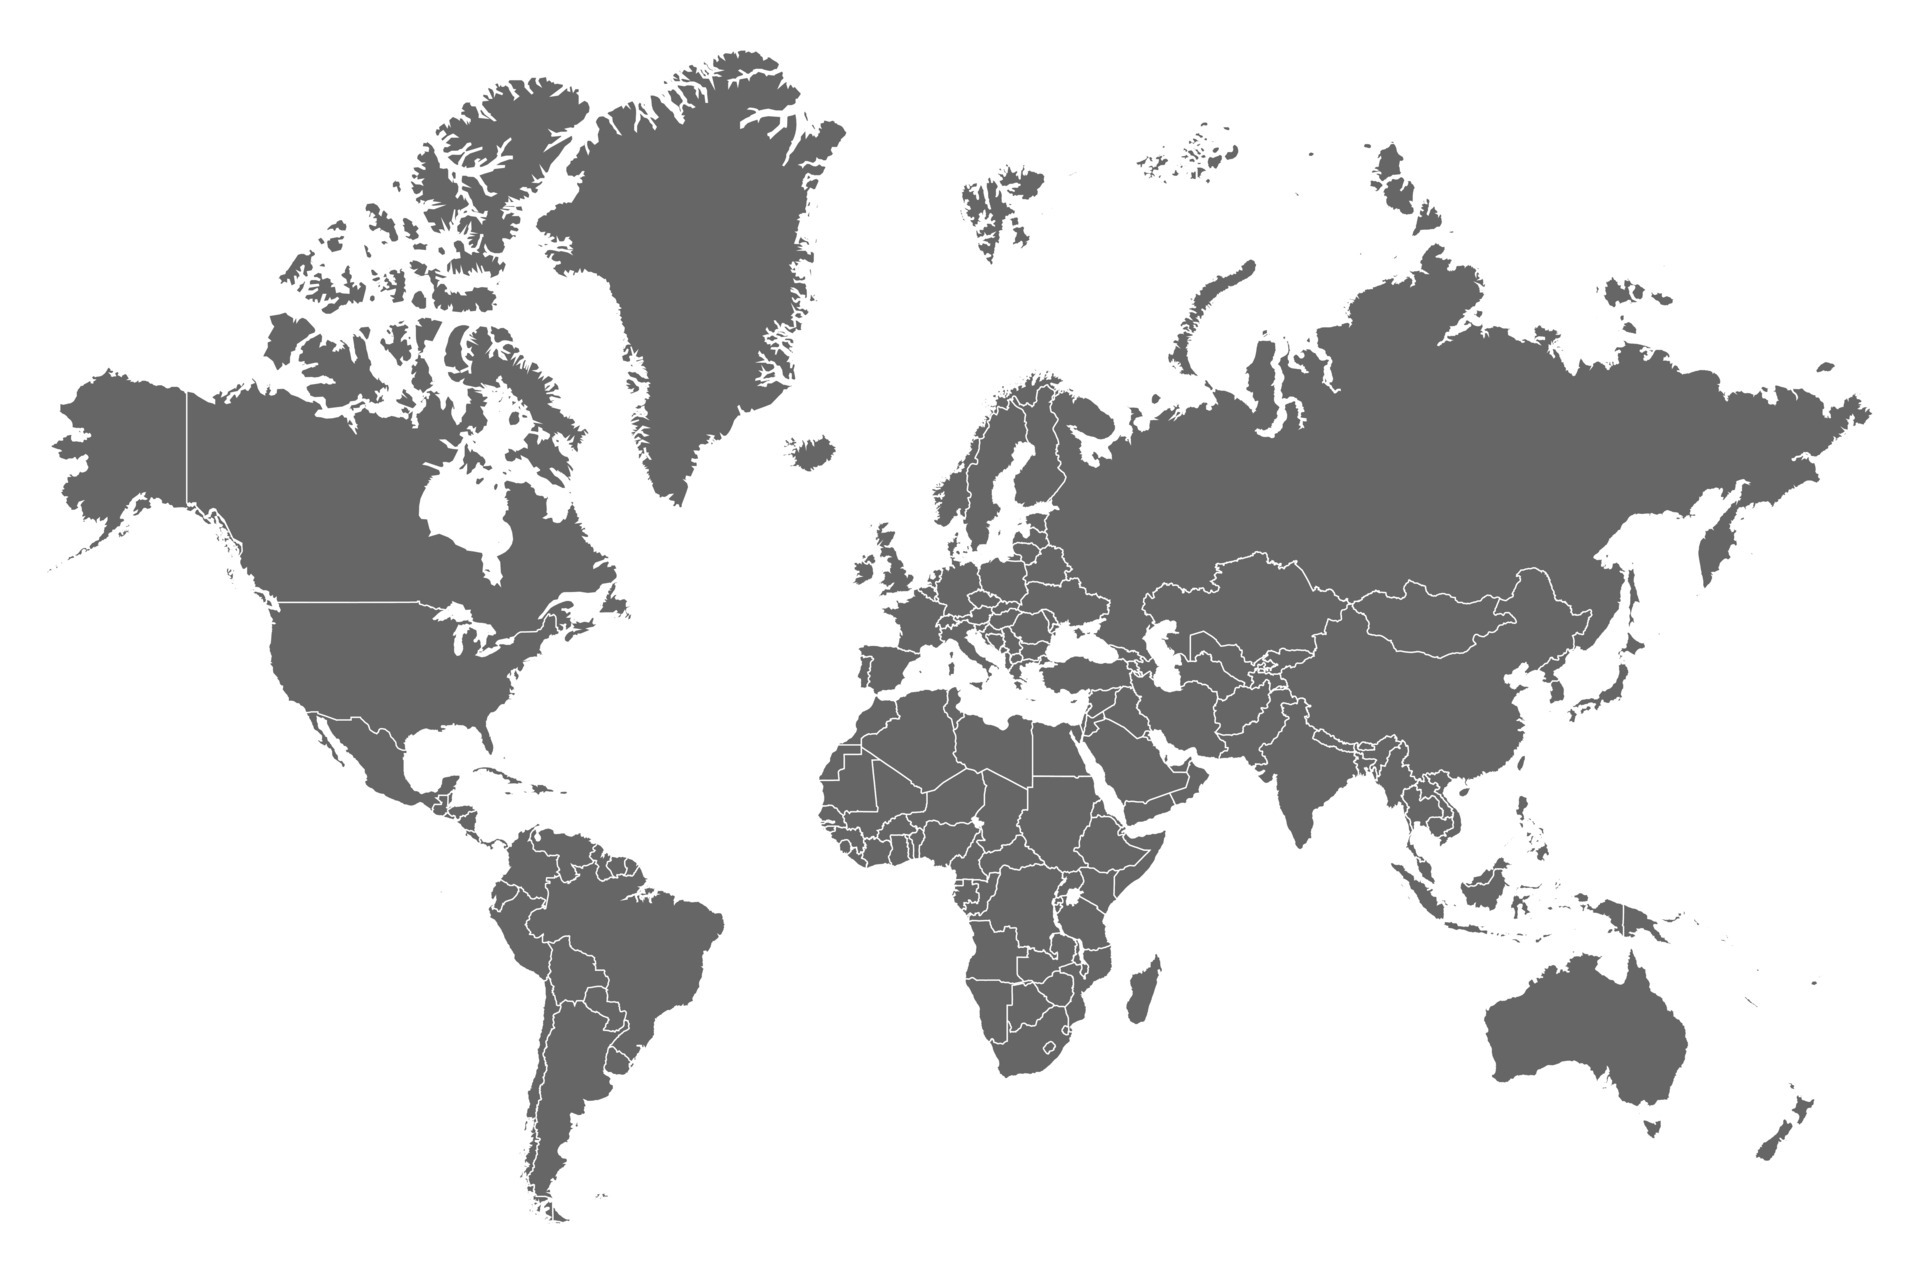 alt="World map" />